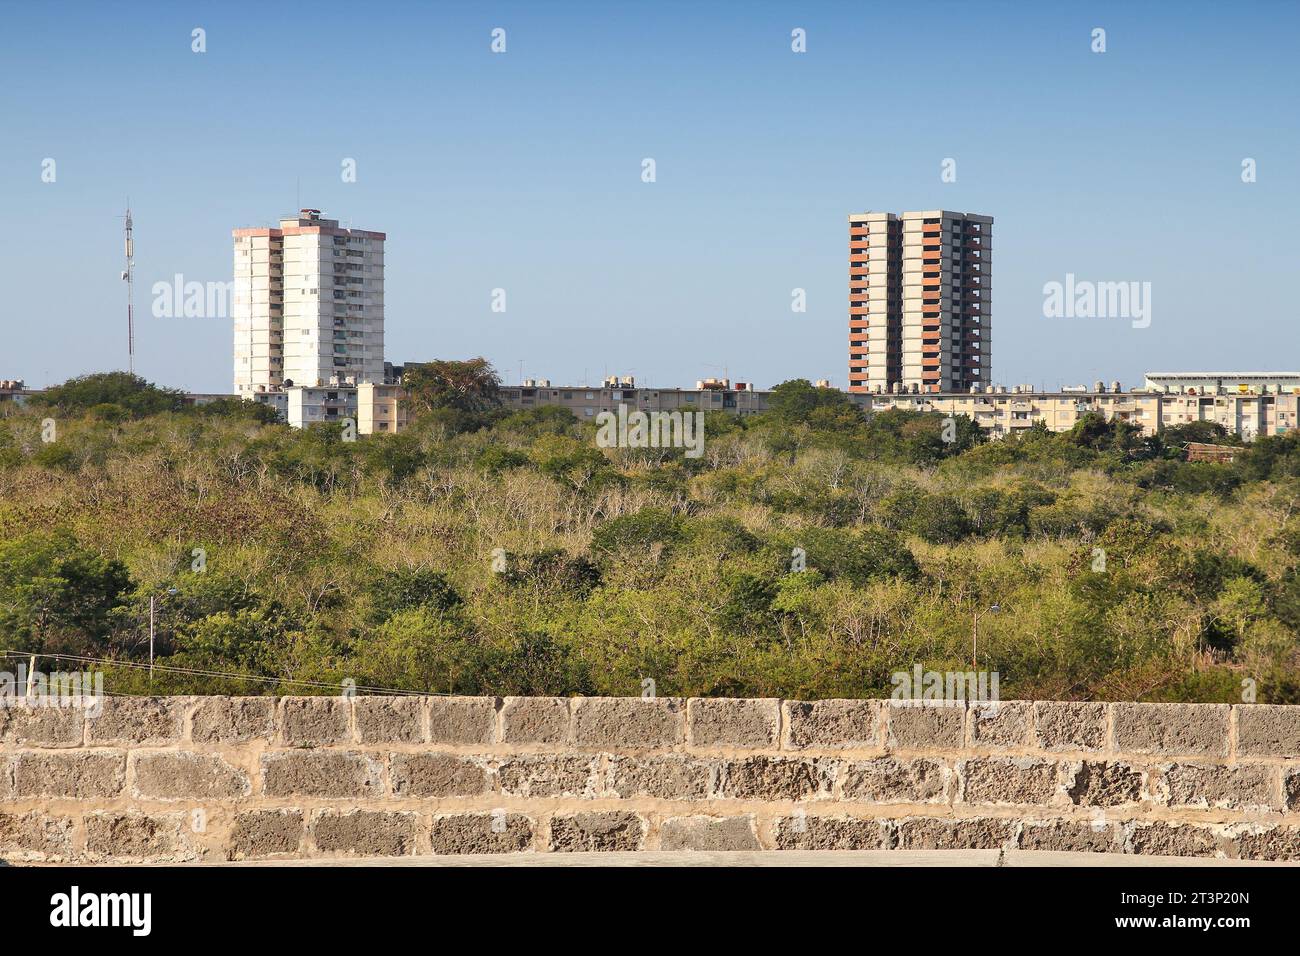 Nuklear City District in Jagua in der Nähe von Cienfuegos, Kuba. Nuklearstadt (Ciudad Nuclear) war für Arbeiter eines zukünftigen Kraftwerks geplant, das nie kompl Stockfoto